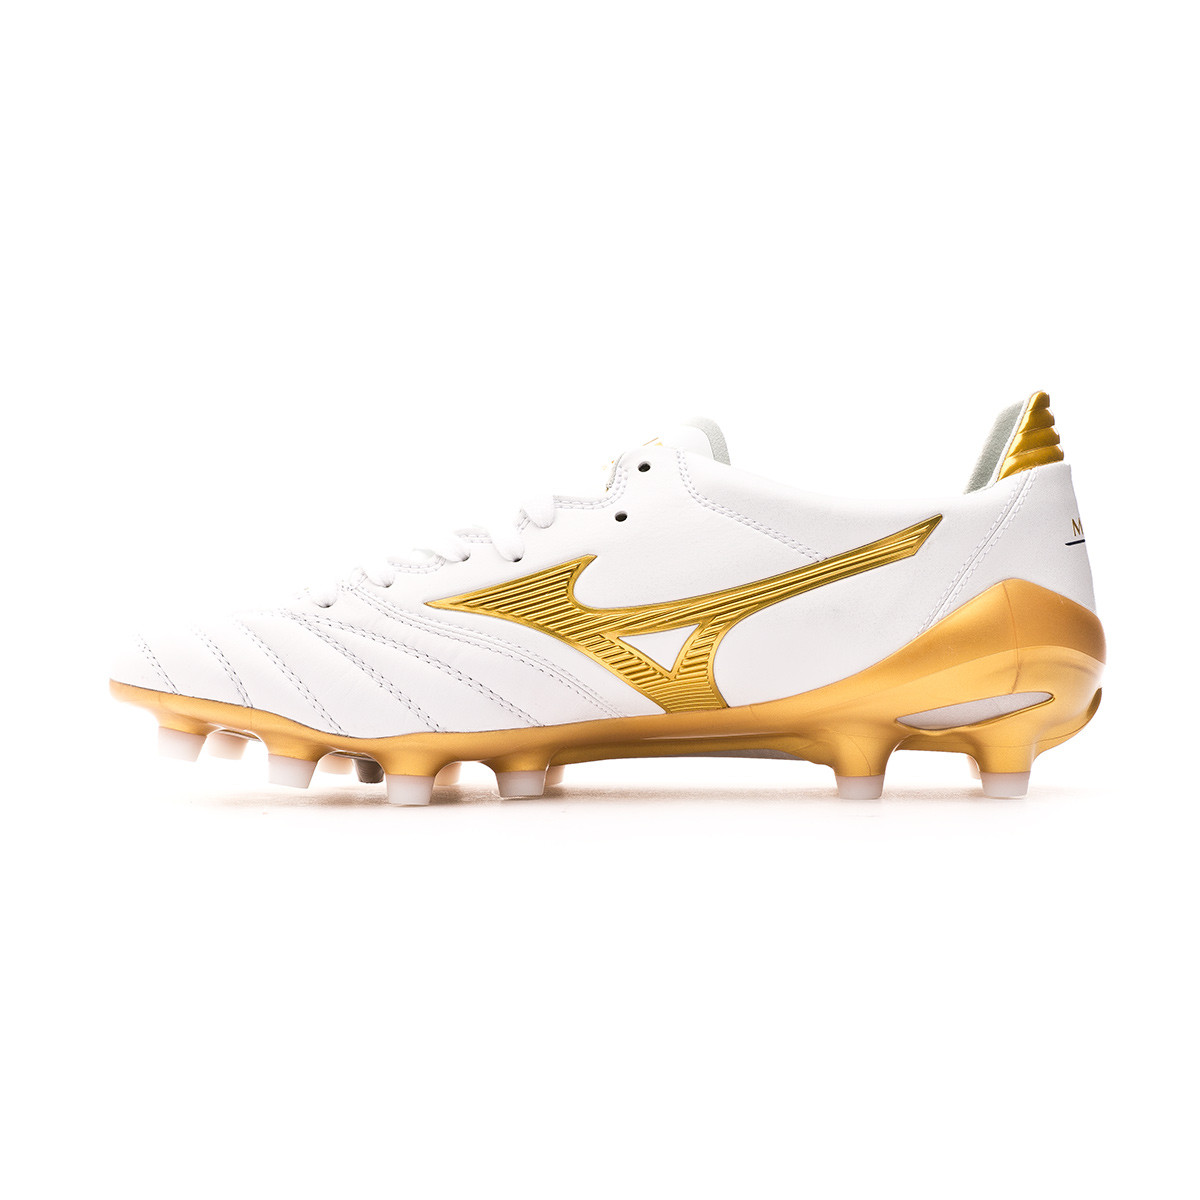 gold mizuno football boots